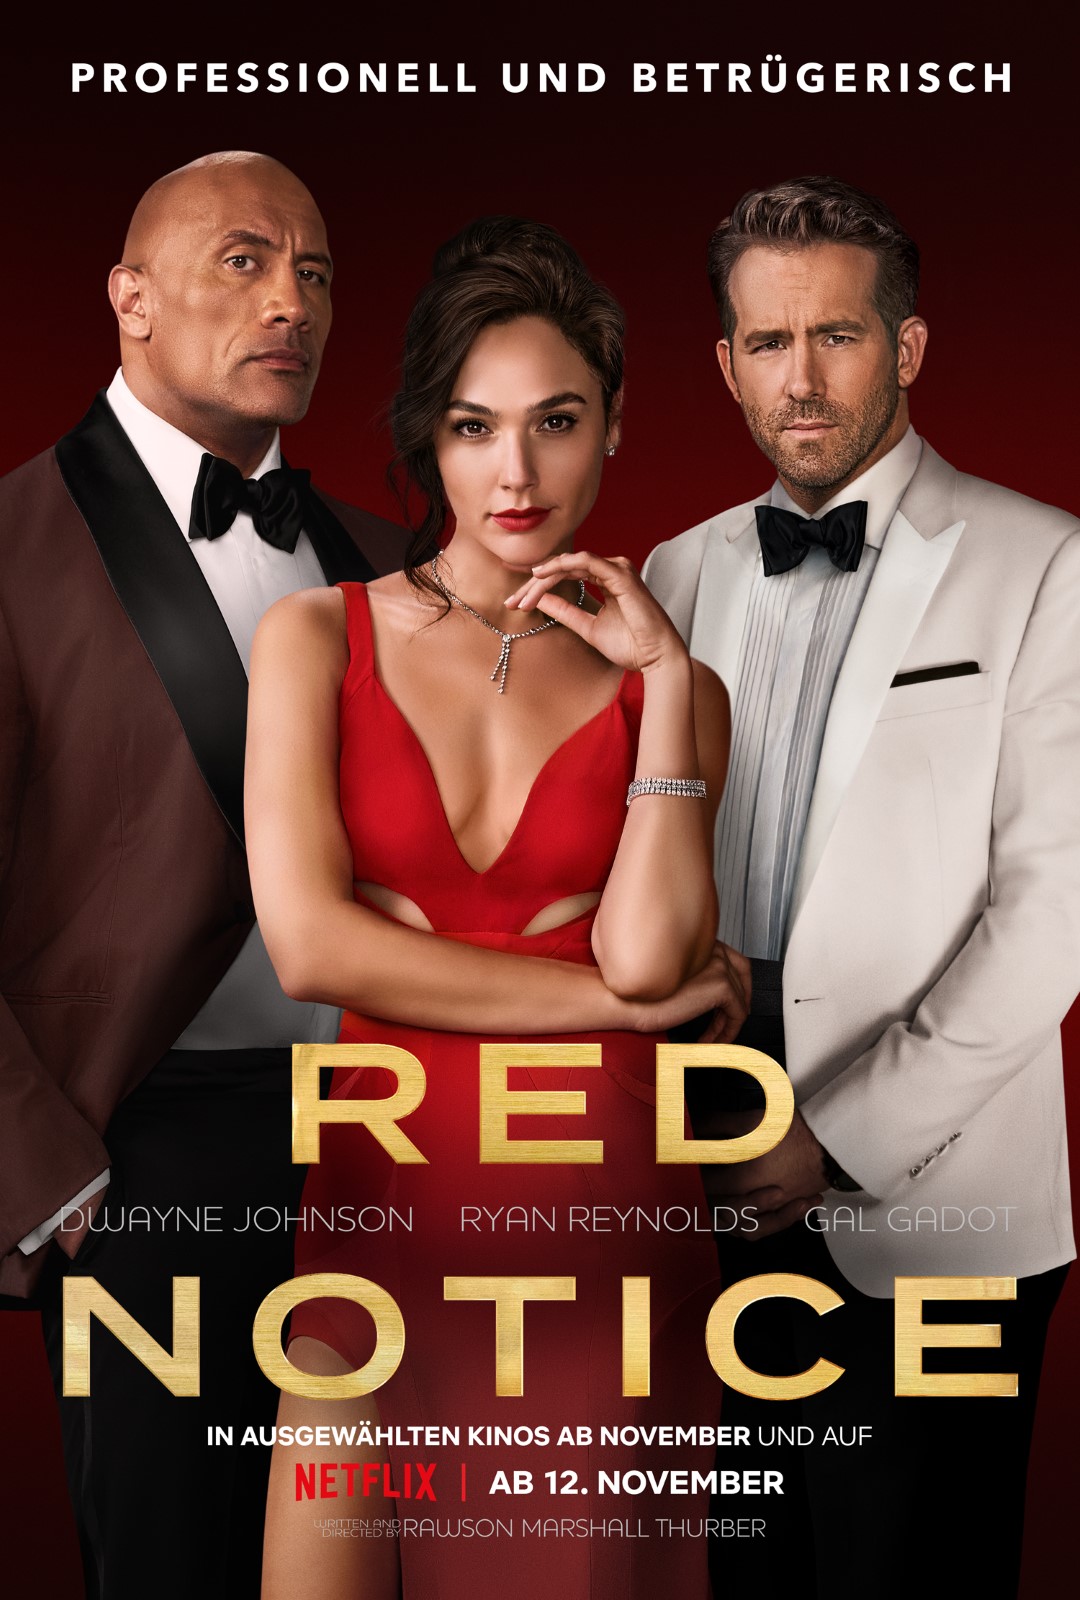 Film Kritik: "Red Notice" ist eine leichtfüßige Action-Komödie